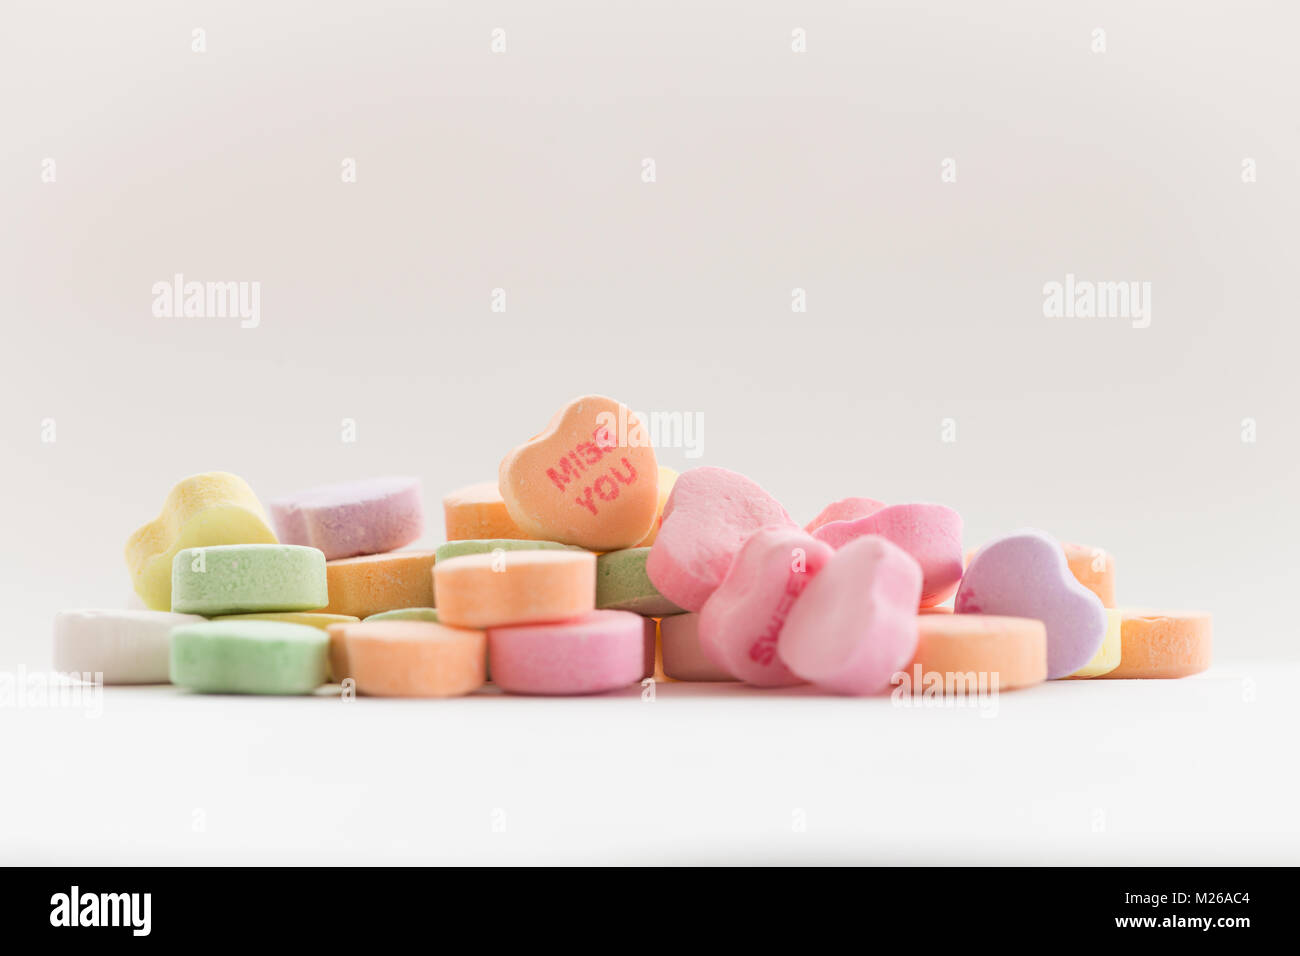 Bonbons coeur de conversation pour la Saint-Valentin avec l'expression 'Miss You' Banque D'Images